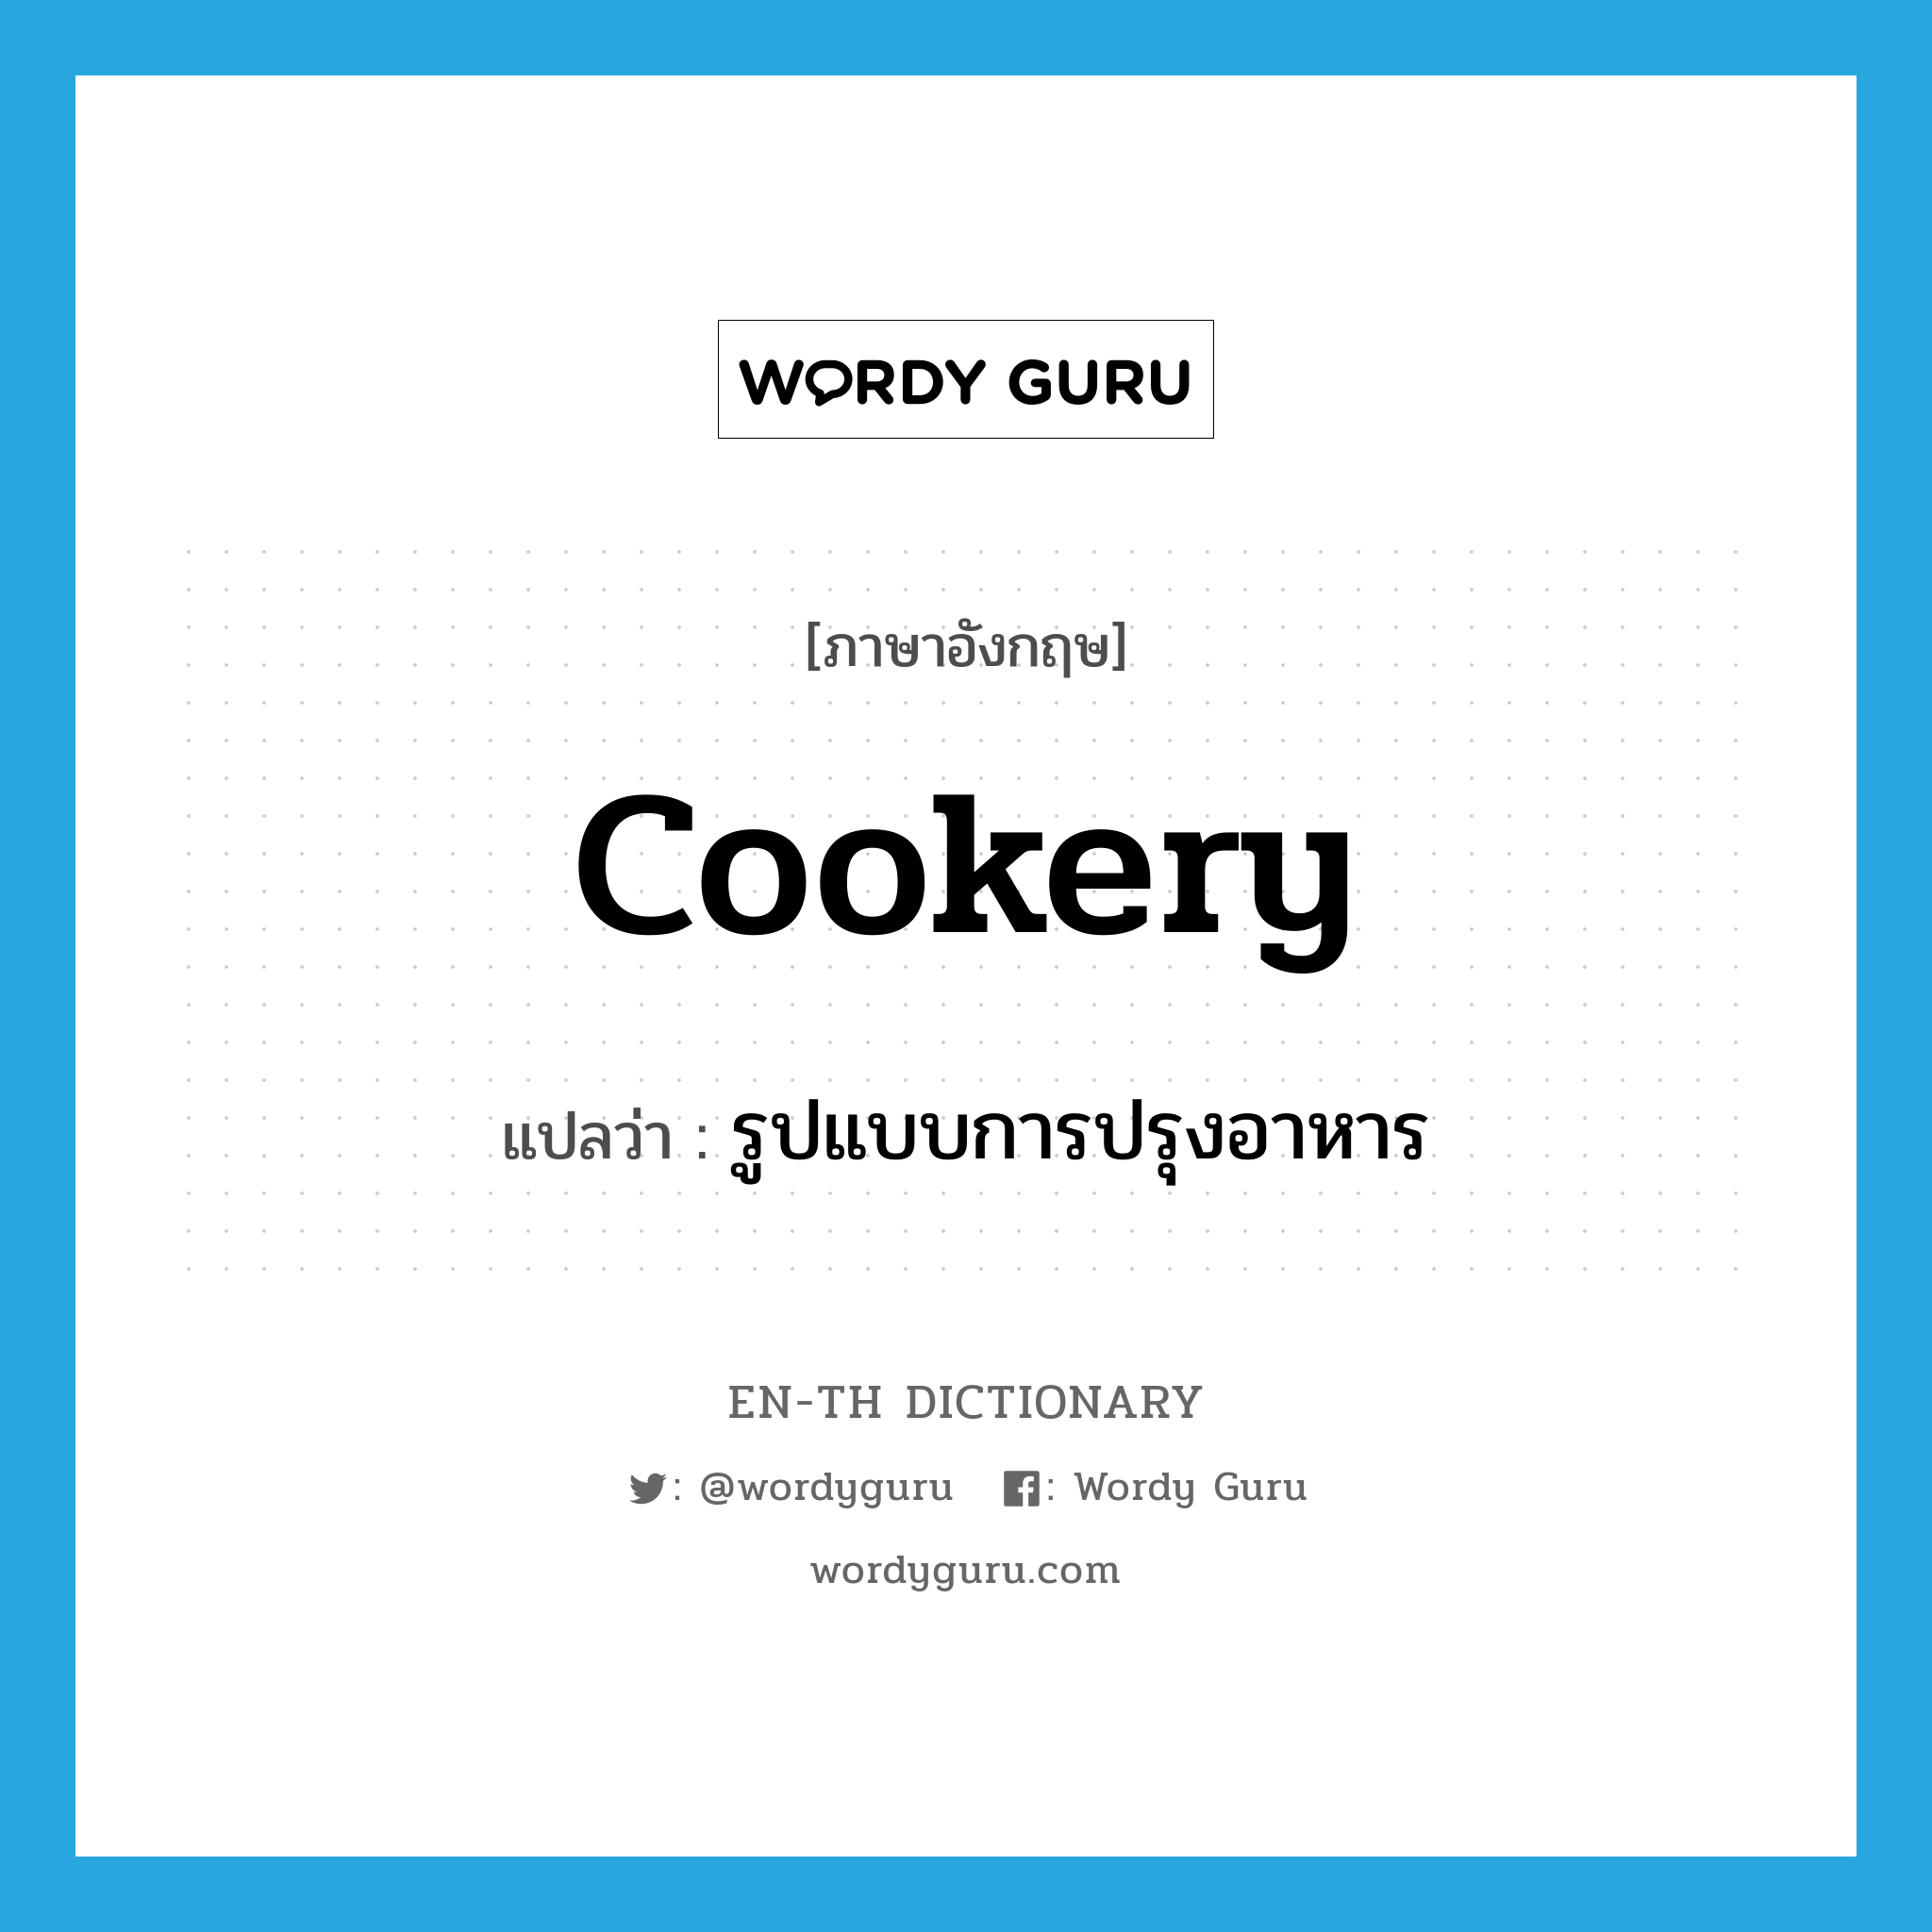 รูปแบบการปรุงอาหาร ภาษาอังกฤษ?, คำศัพท์ภาษาอังกฤษ รูปแบบการปรุงอาหาร แปลว่า cookery ประเภท N หมวด N